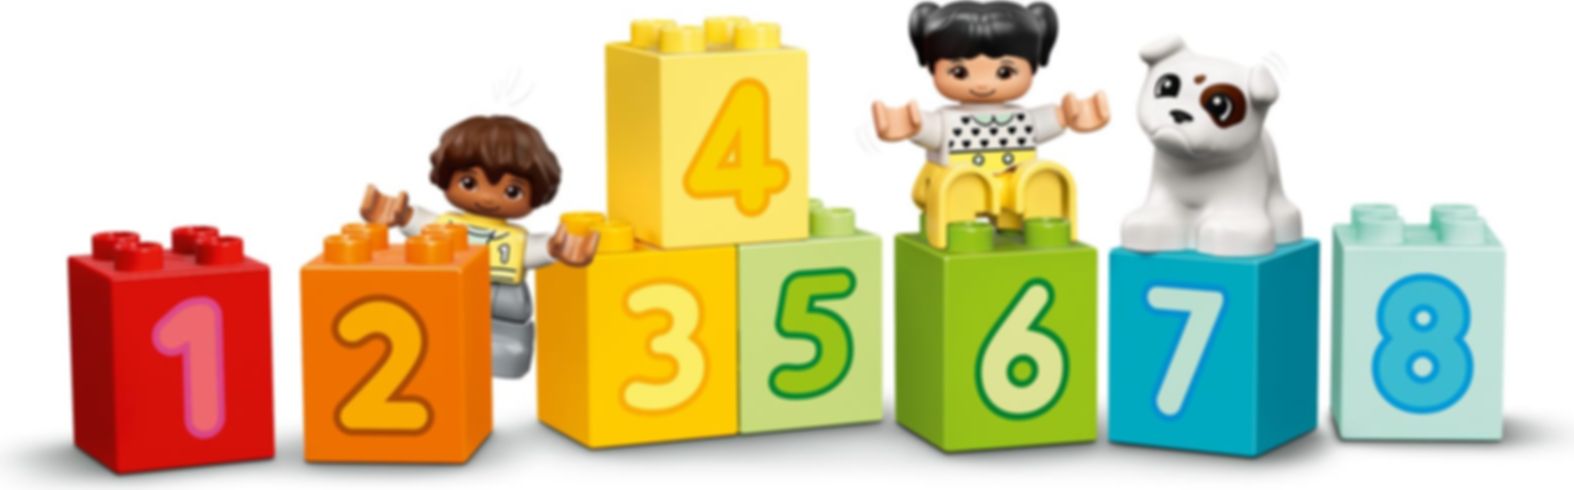 LEGO® DUPLO® Le train des chiffres - Apprendre à compter composants